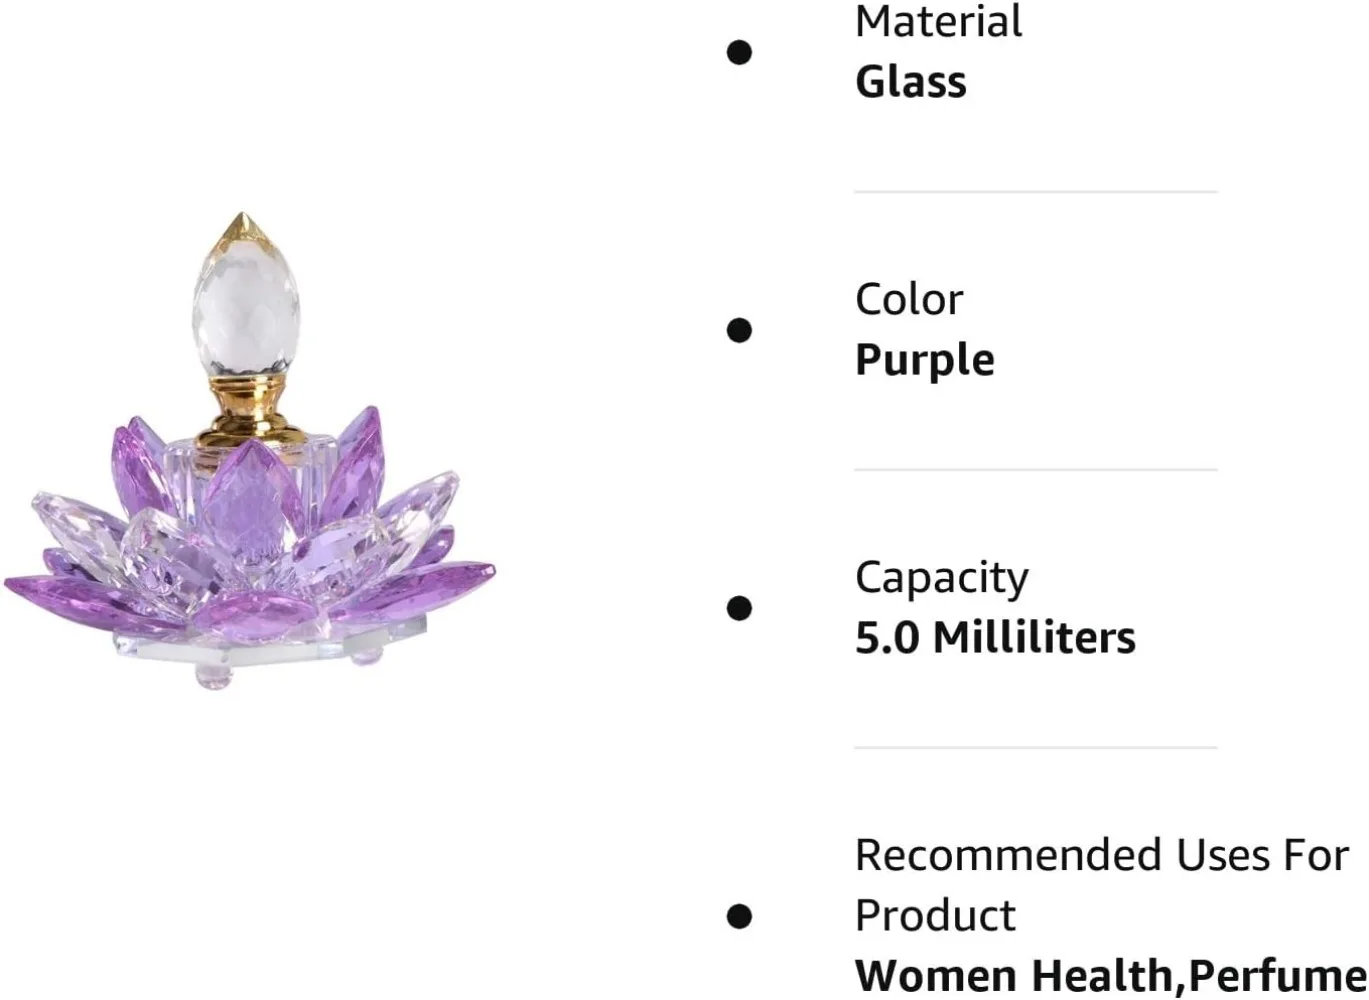 Vintage plnitelné parfém láhev broušené sklo fialový prázdný lotos kvést figurky sklo dar pro její kamaradka manželka domácí dekorace